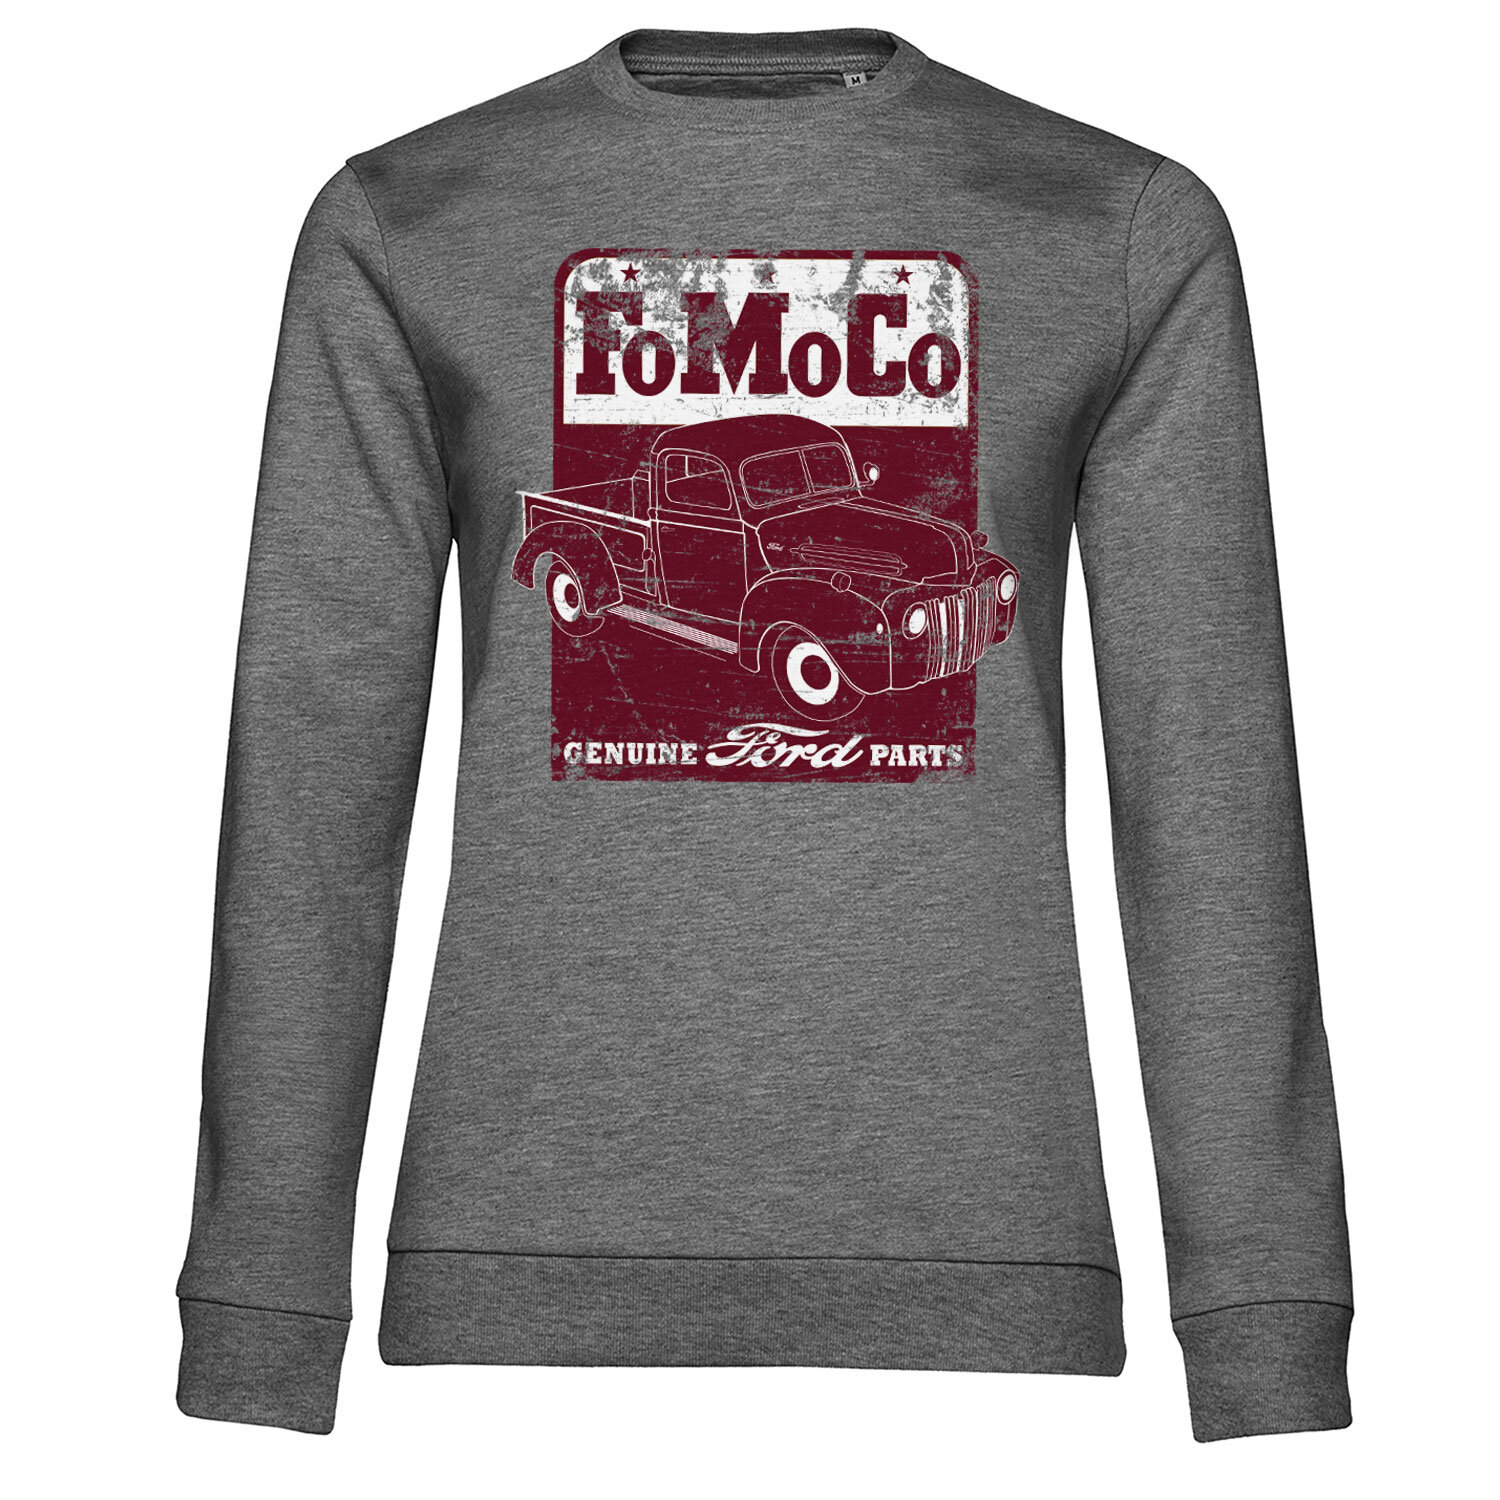 FoMoCo - Genuine Ford Parts Girly Sweatshirt